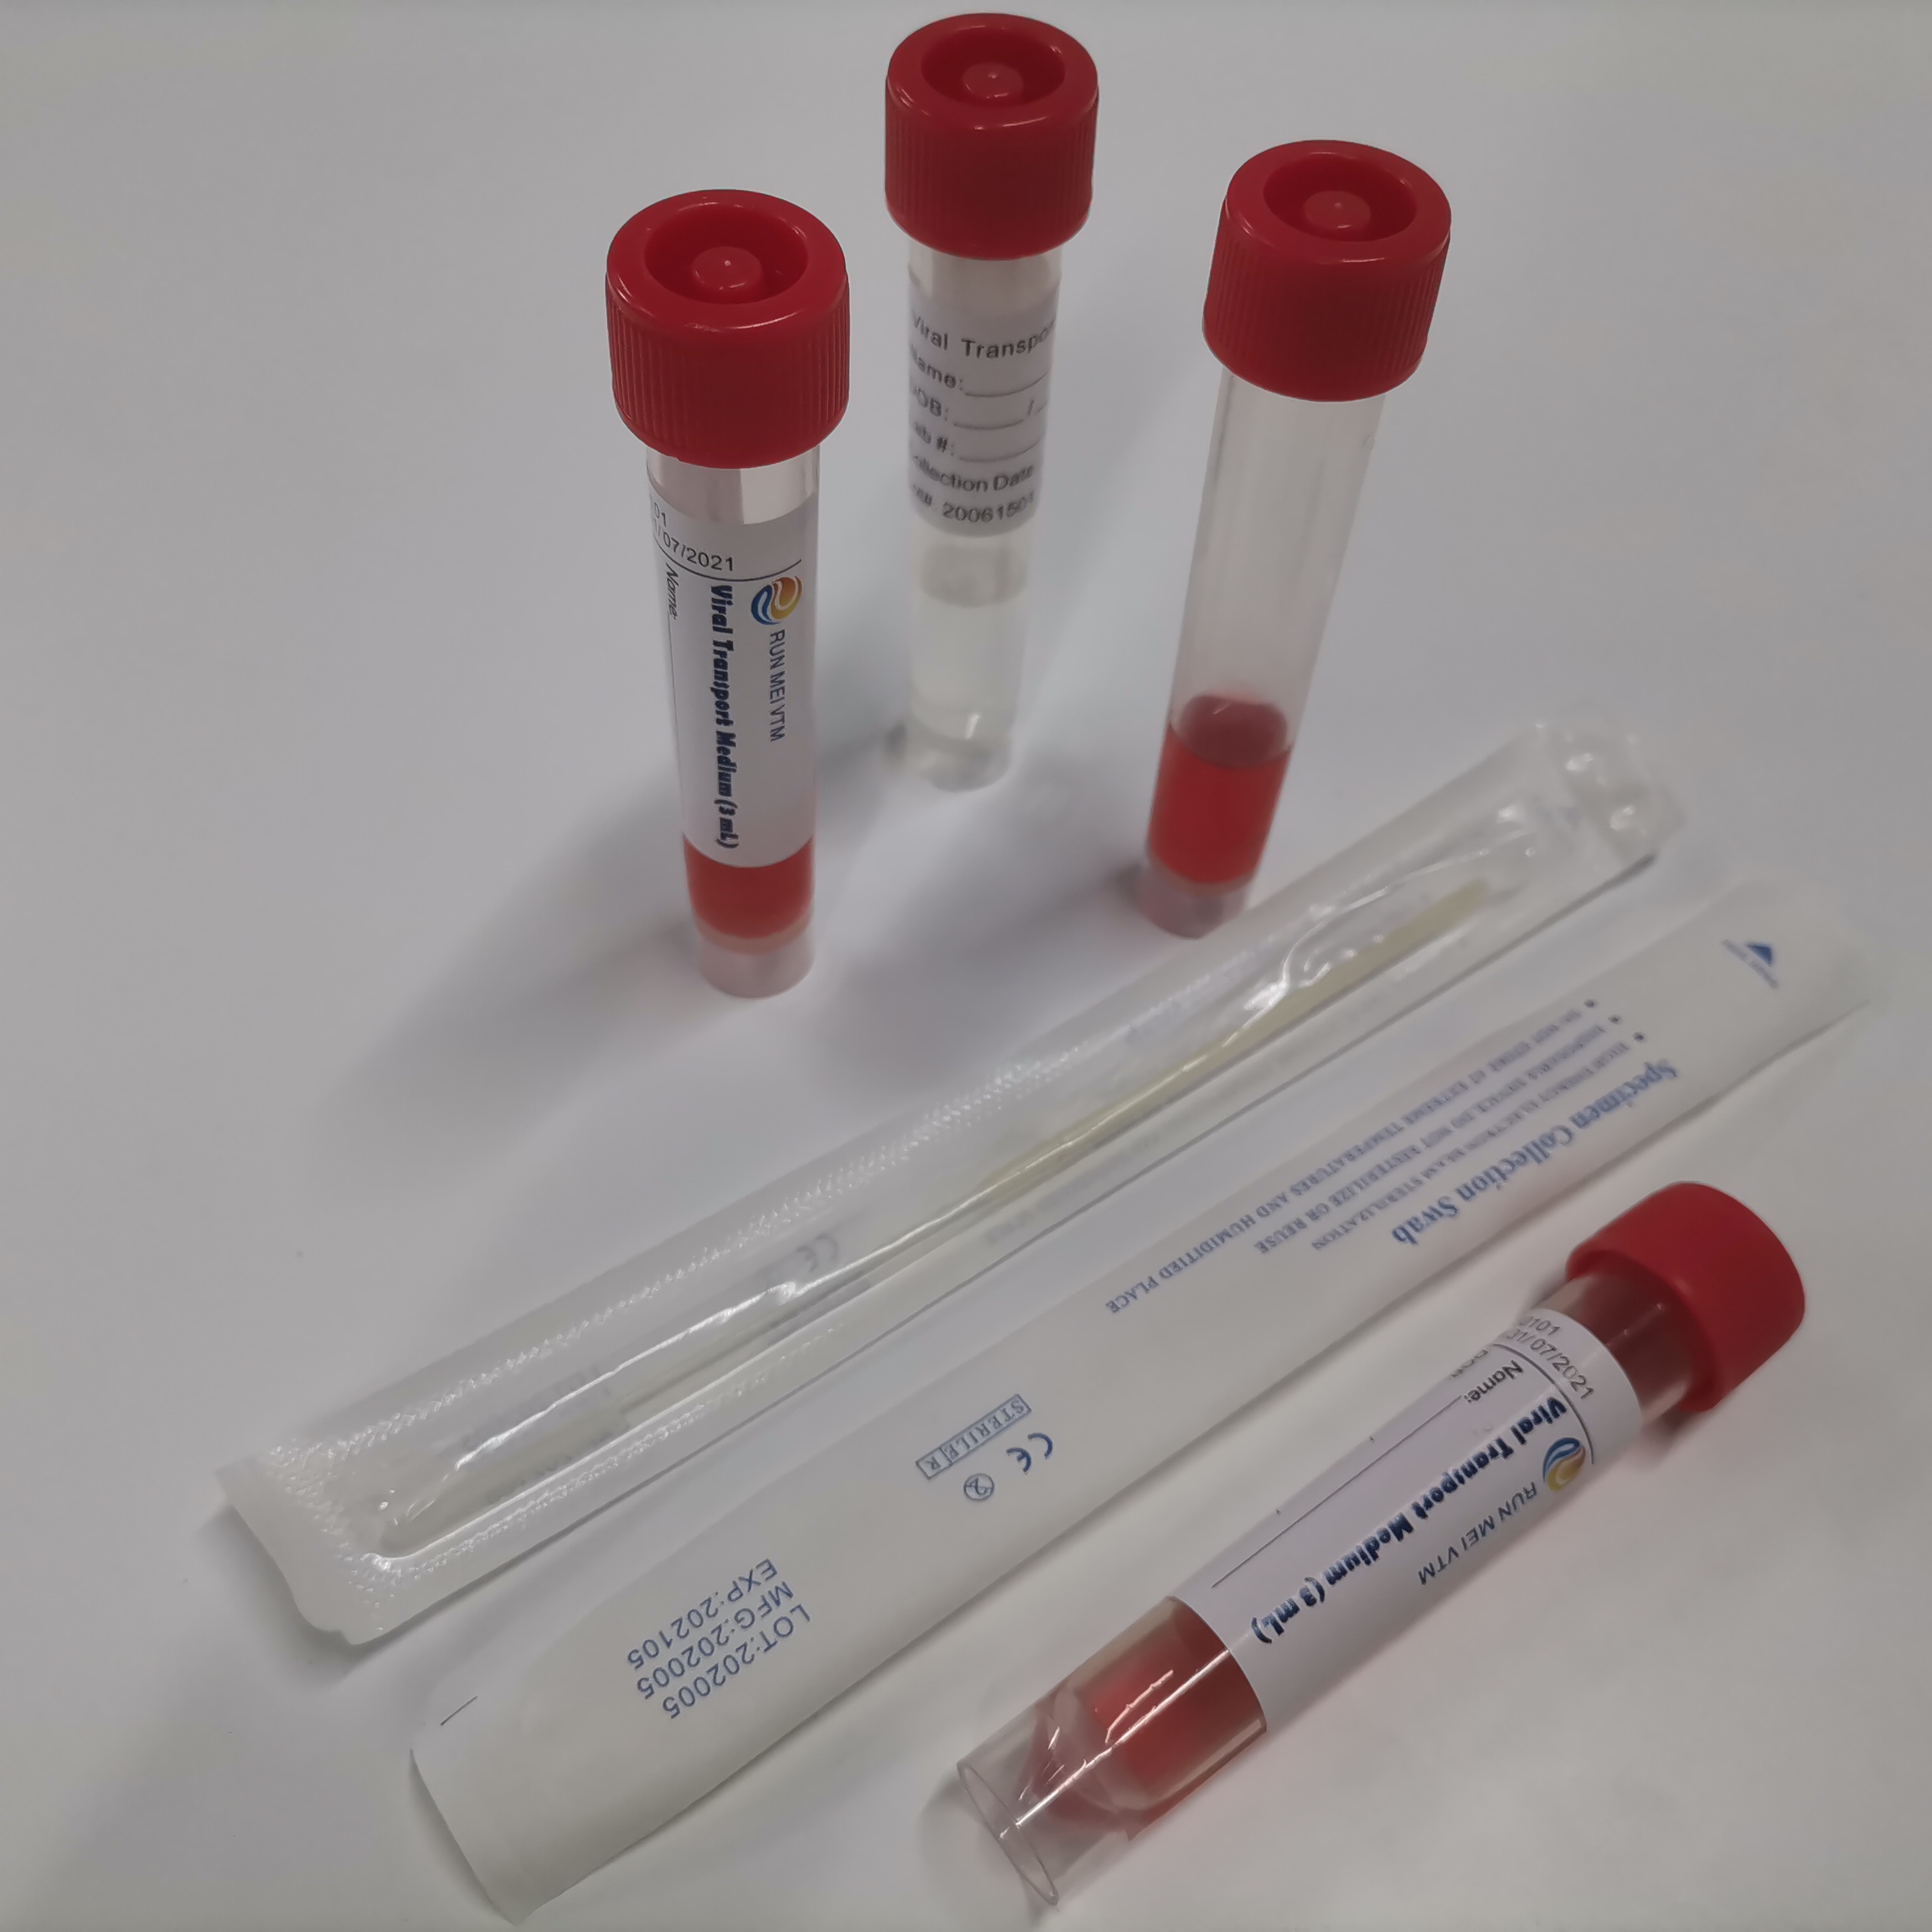 VTM - Transporte viral Tubos médios com certificação CE FDA